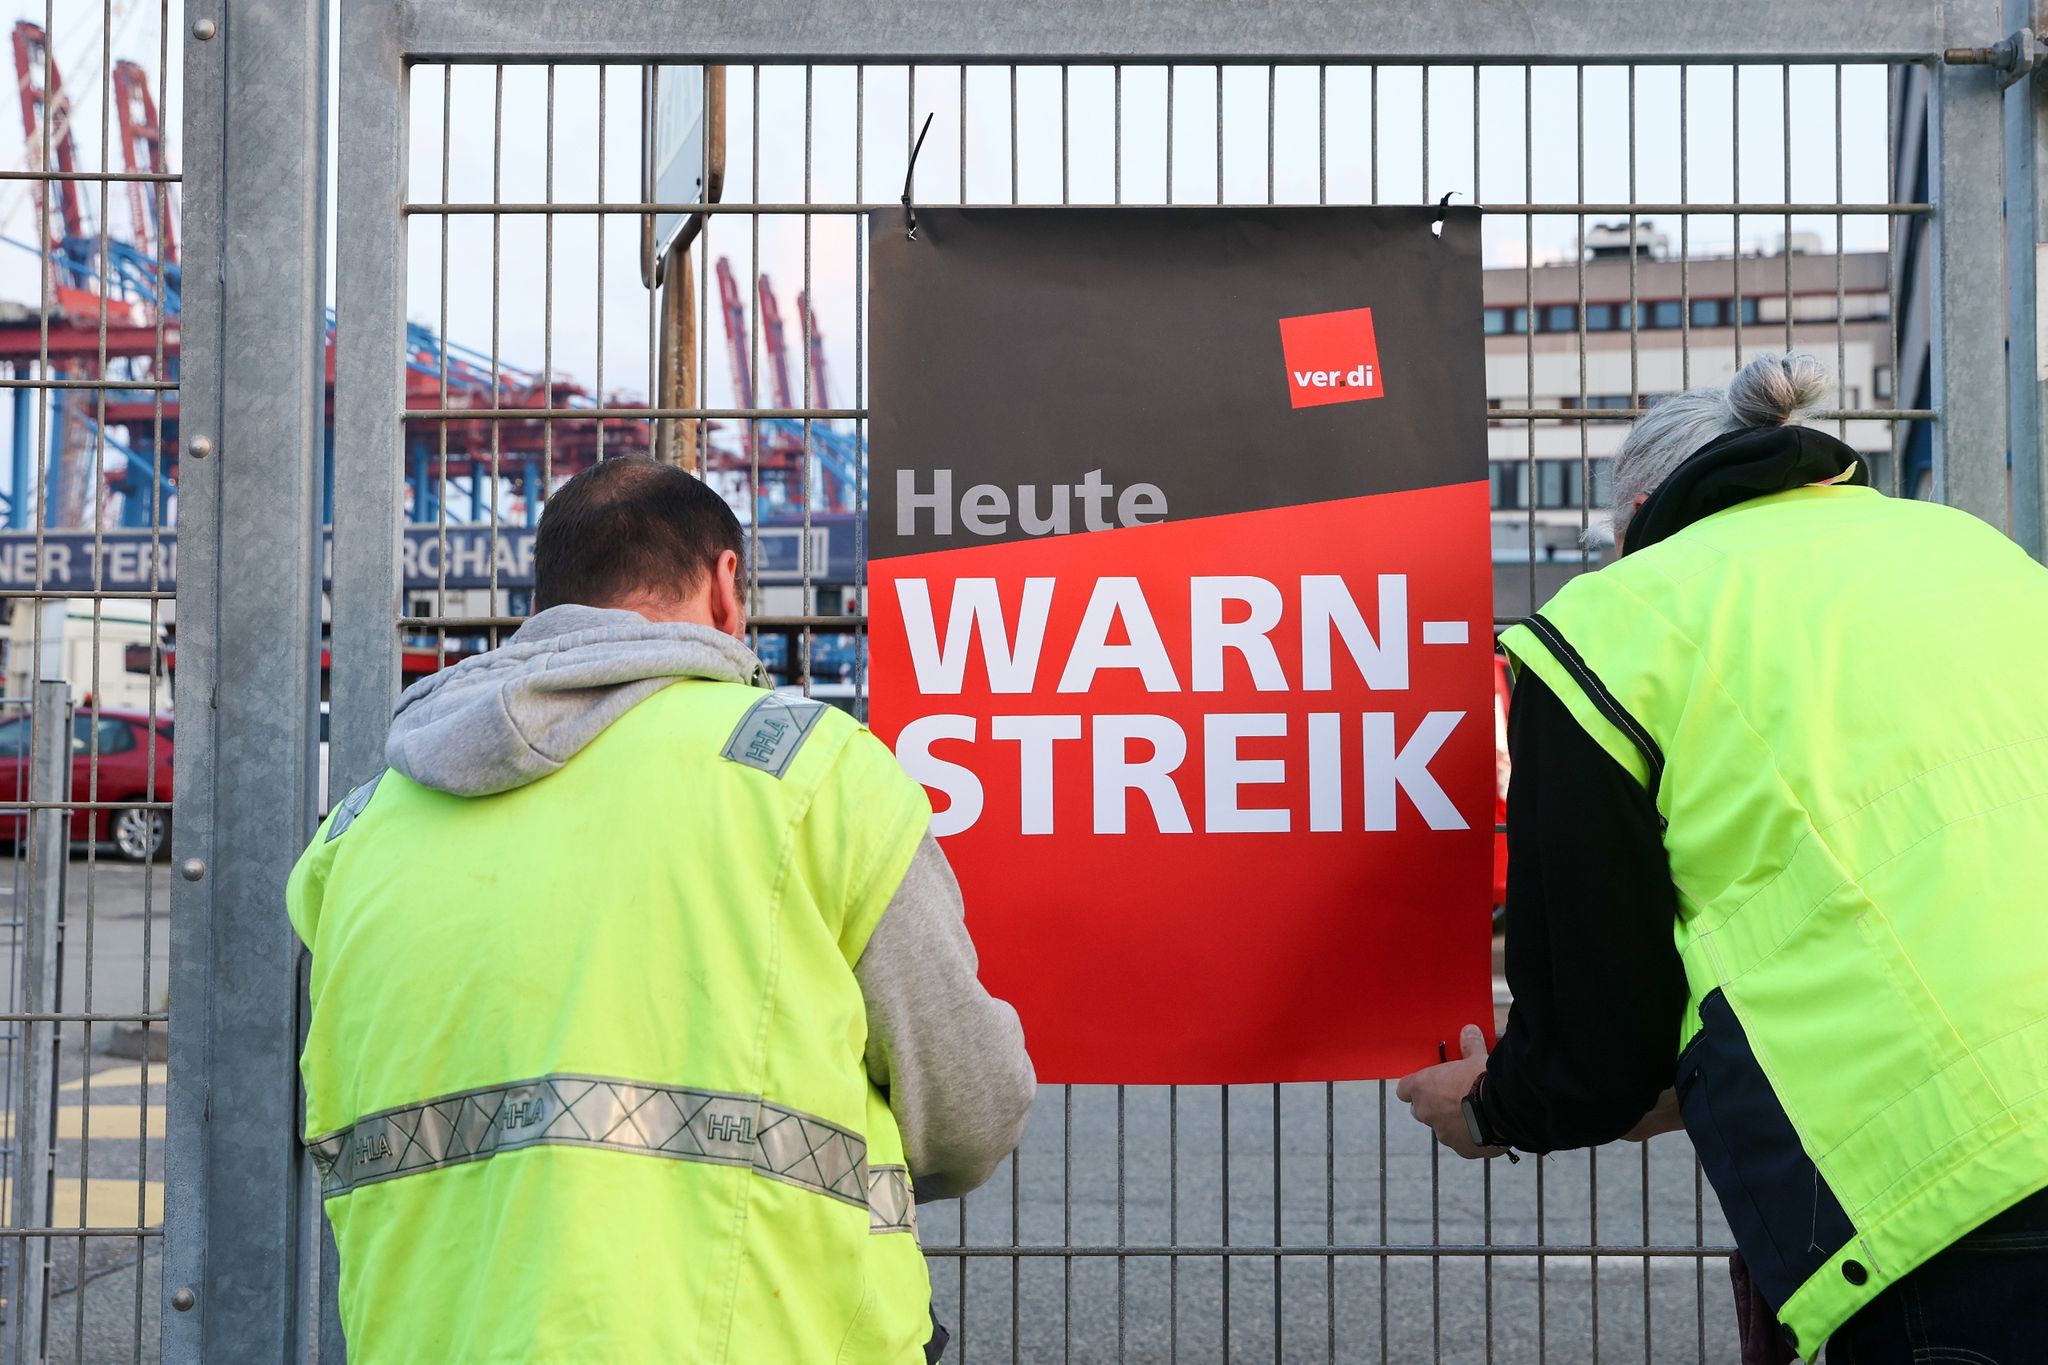 Streiks: Deutschland international nur im unteren Mittelfeld